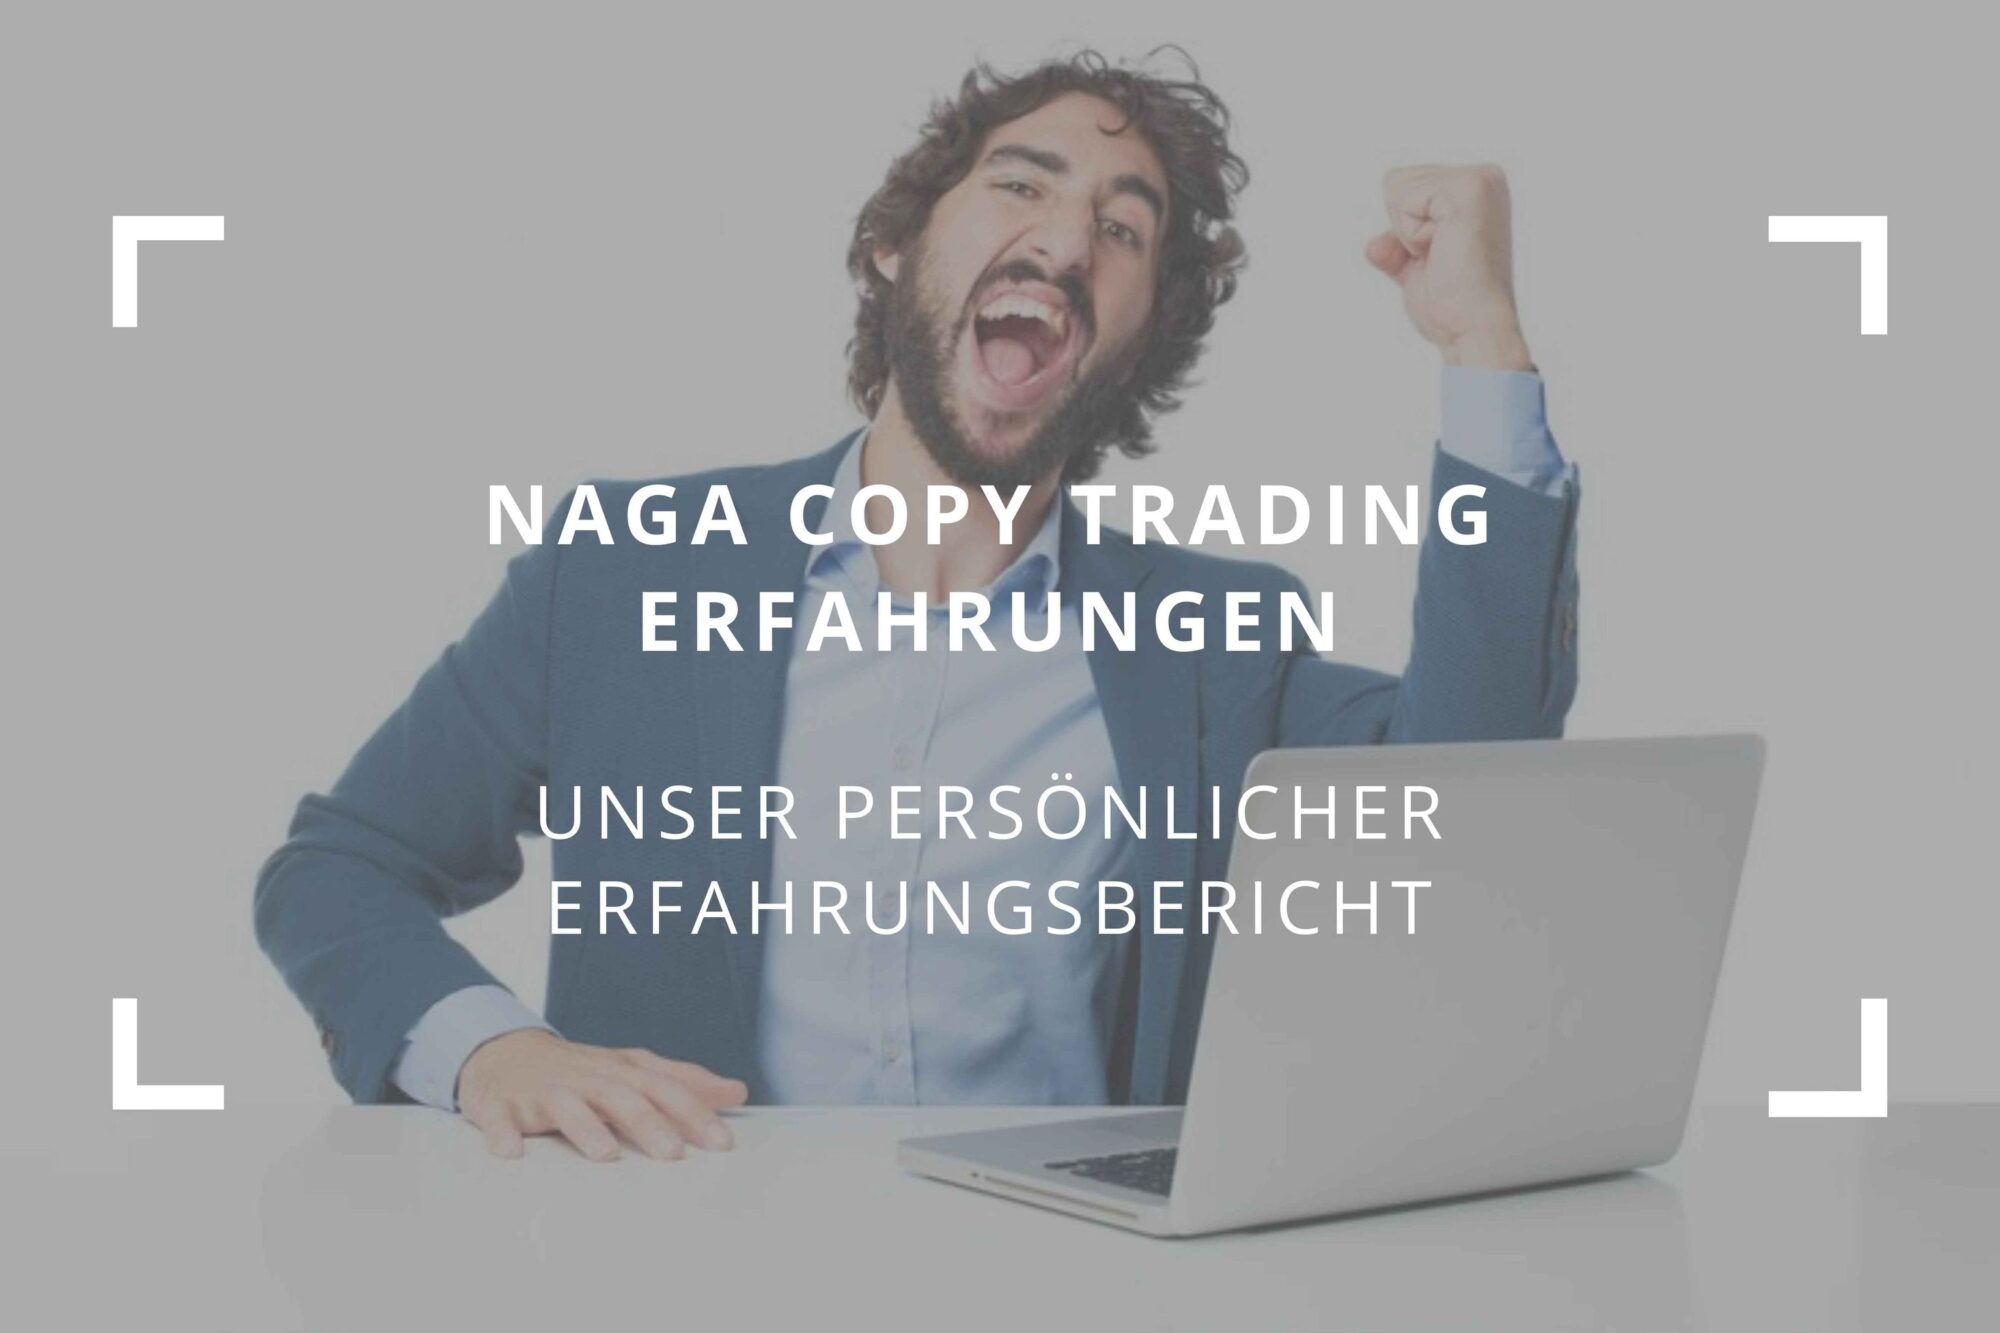 Titelbild zum Beitrag: "Naga Copy Trading Erfahrungen - Unser persönlicher Erfahrungsbericht"